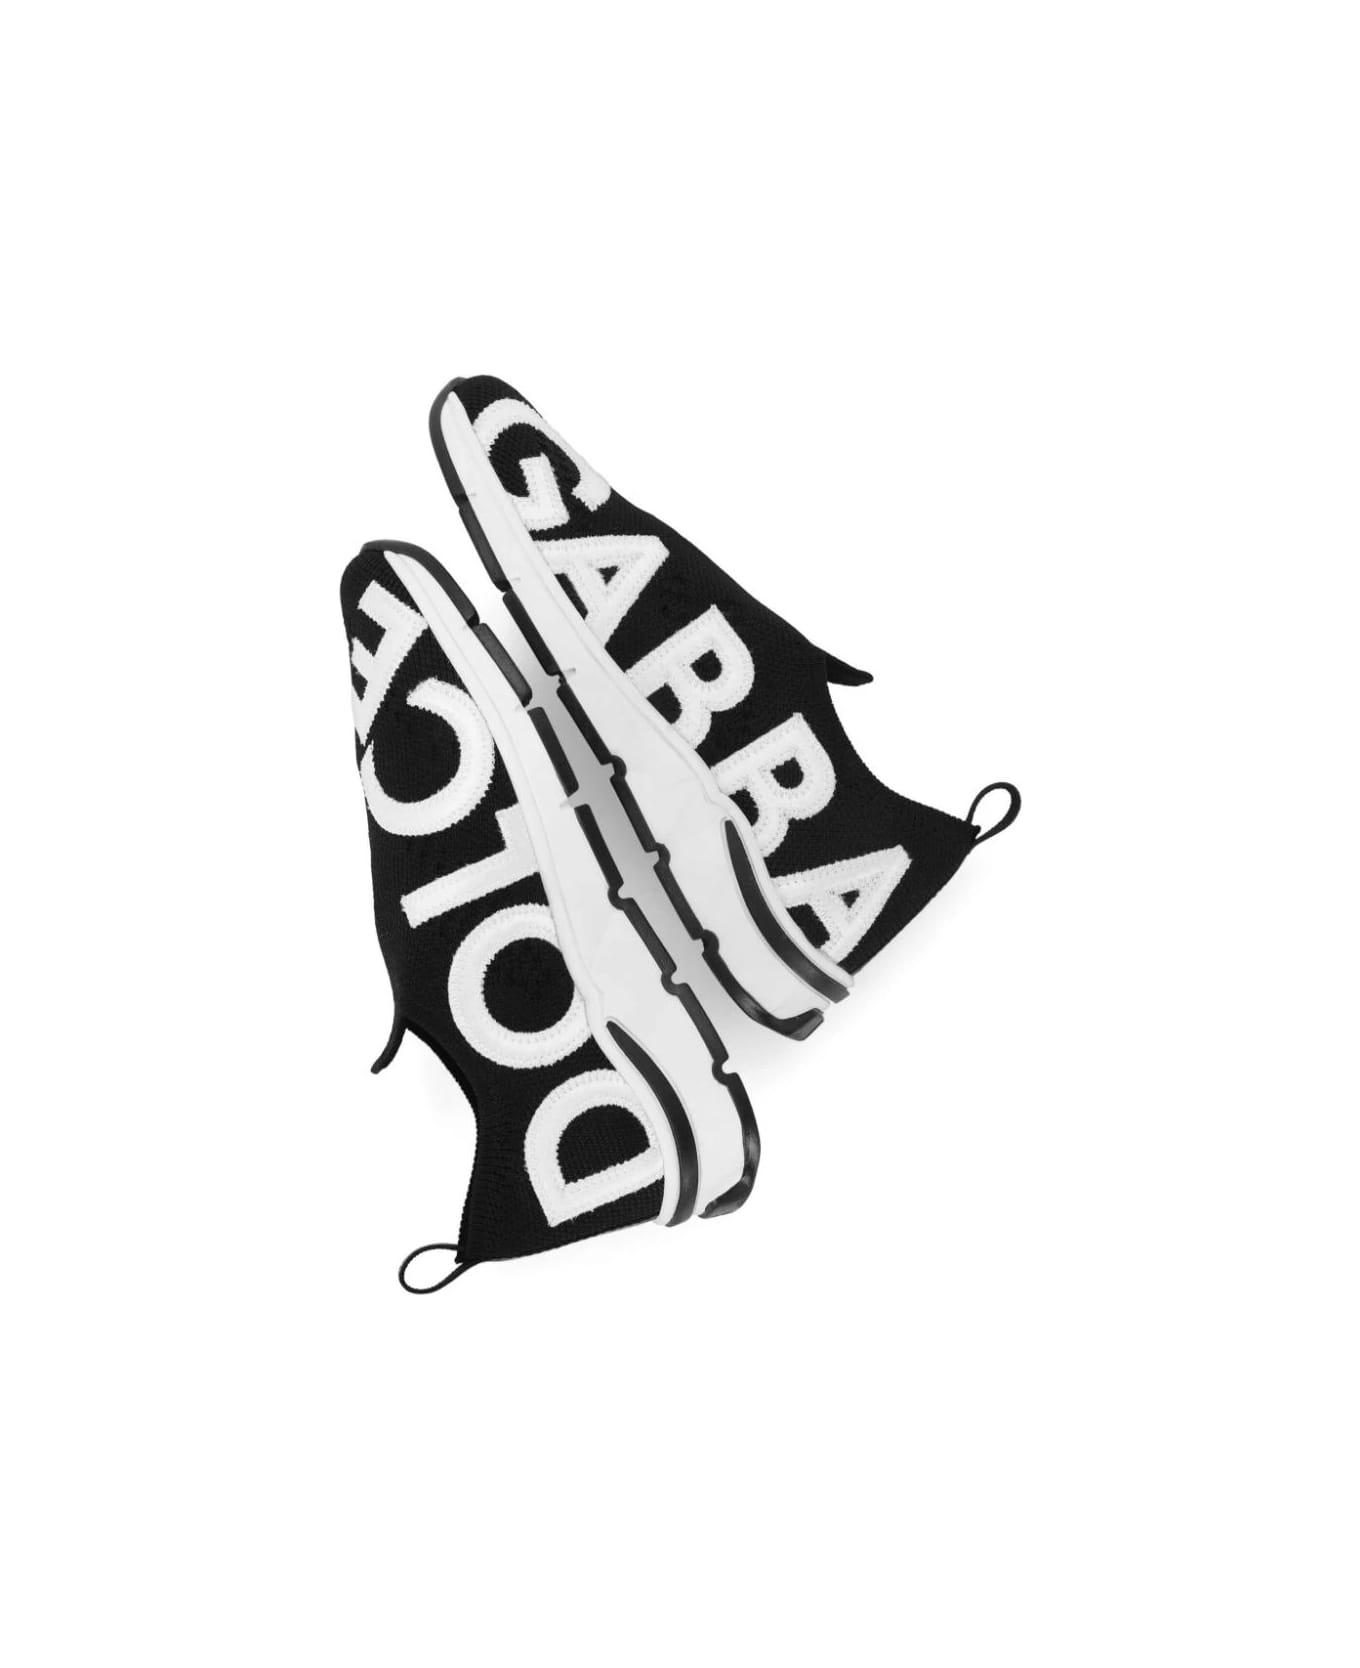 Dolce & Gabbana Black Socks Sneakers With Logo - Black シューズ